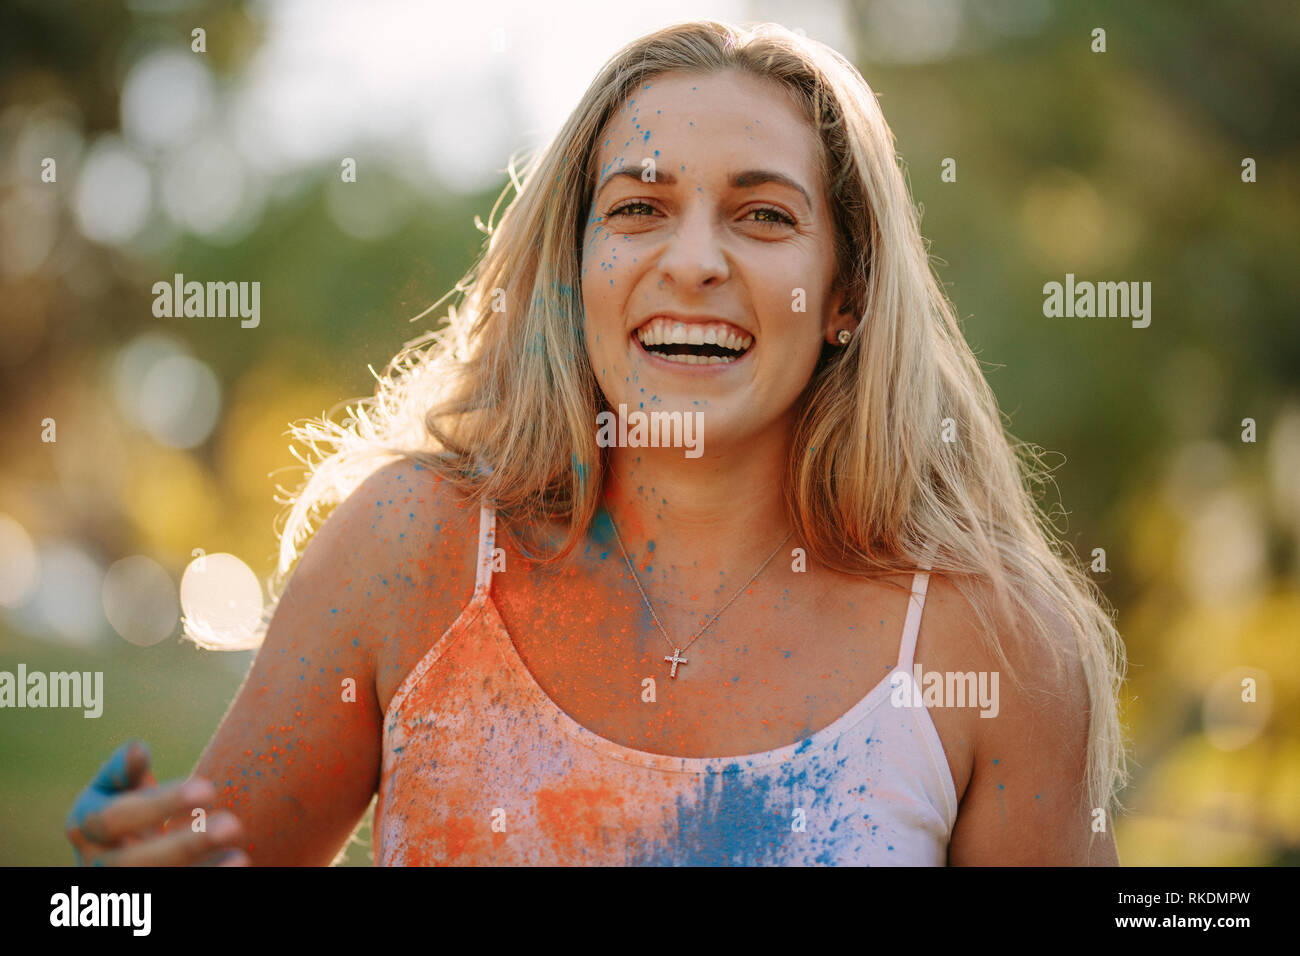 Lächelnde Frau mit Farben spritzte auf Ihren Körper spielen Holi. Glückliche Frau holi Spielen mit Puder Farben im Freien. Stockfoto